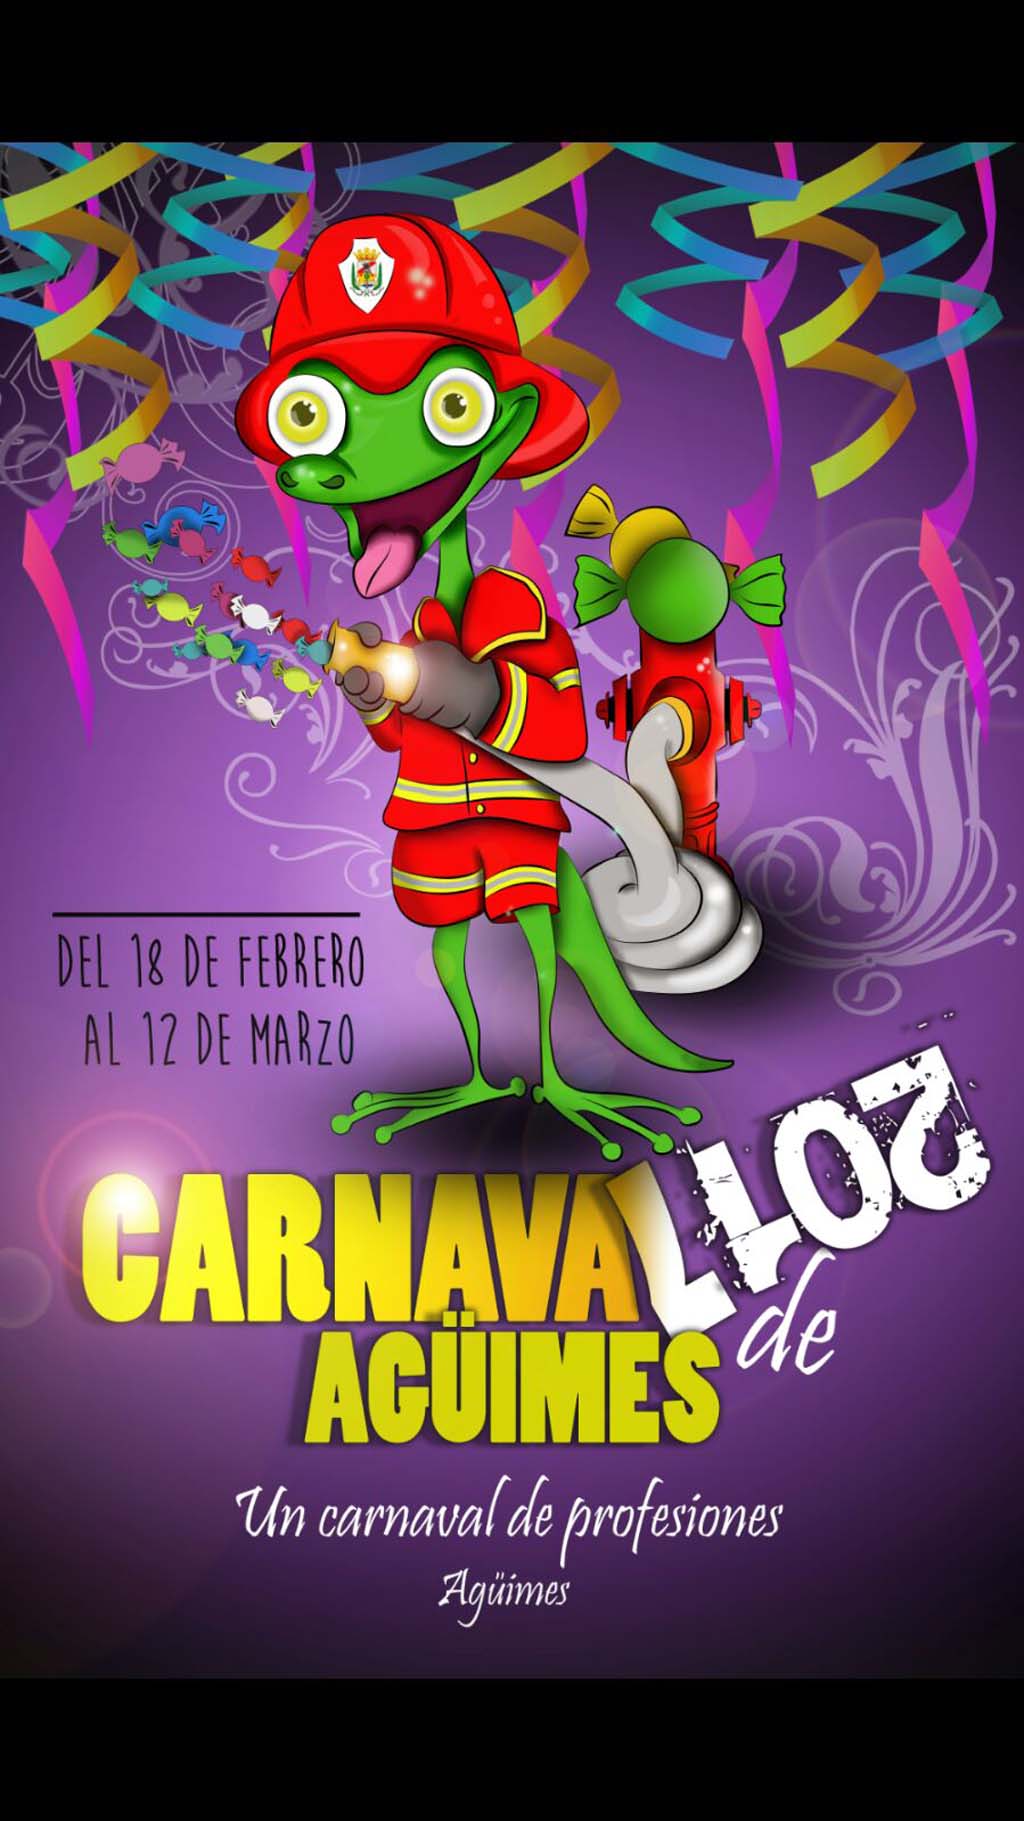 El lagarto #Bombero, símbolo del #Carnaval de la villa canaria de @VilladeAguimes